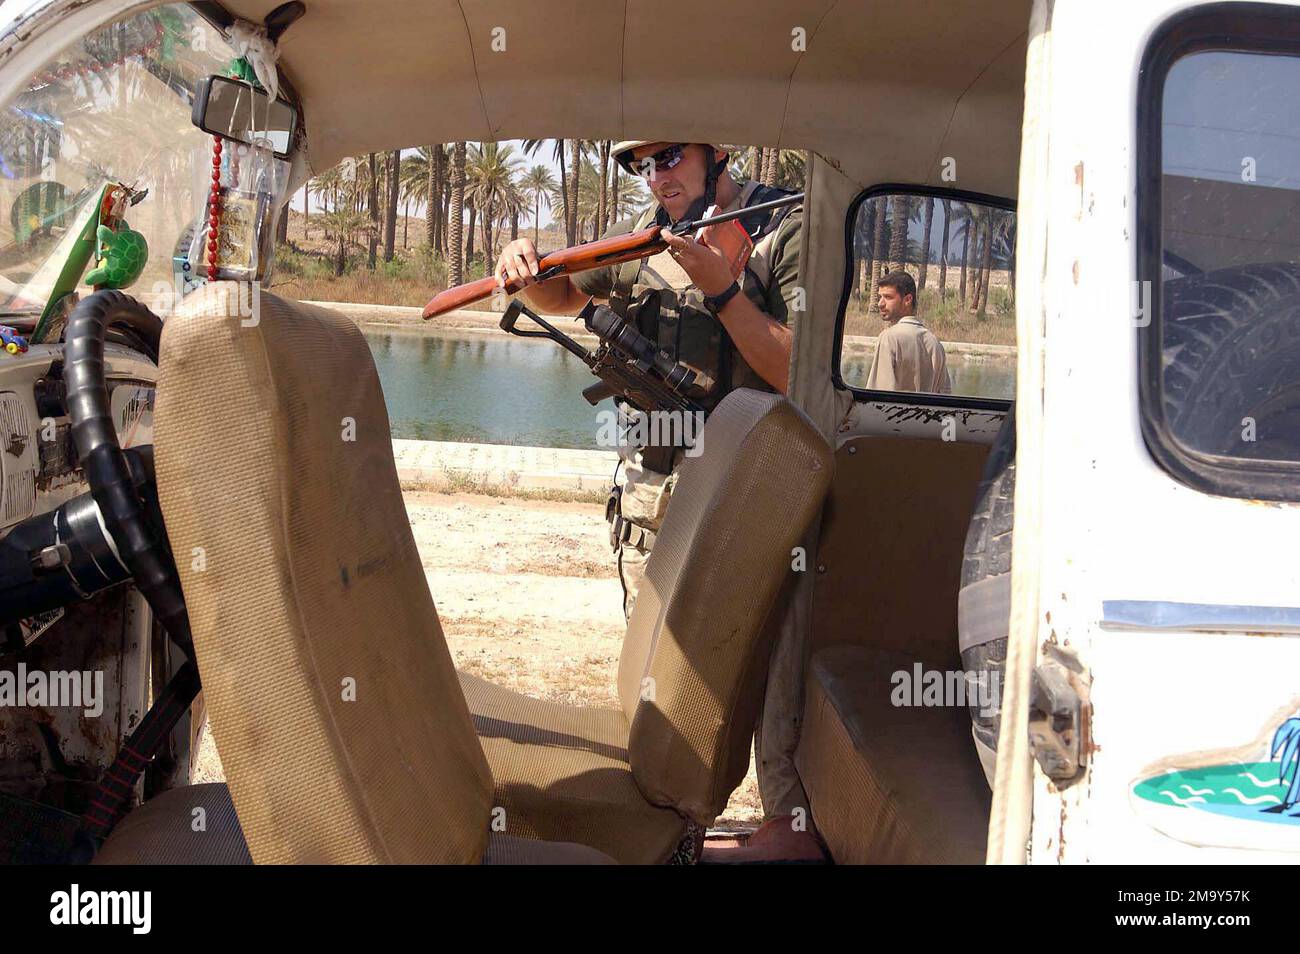 040321-F-2902B-011. Sujet opération/série: LIBERTÉ IRAQUIENNE base: Camp Babylone pays: Irak (IRQ) scène Major Commandement montré: S/O. Banque D'Images